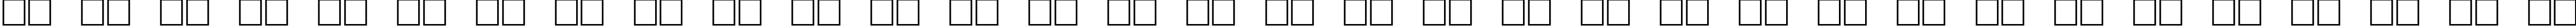 Пример написания русского алфавита шрифтом DG_Slipstream